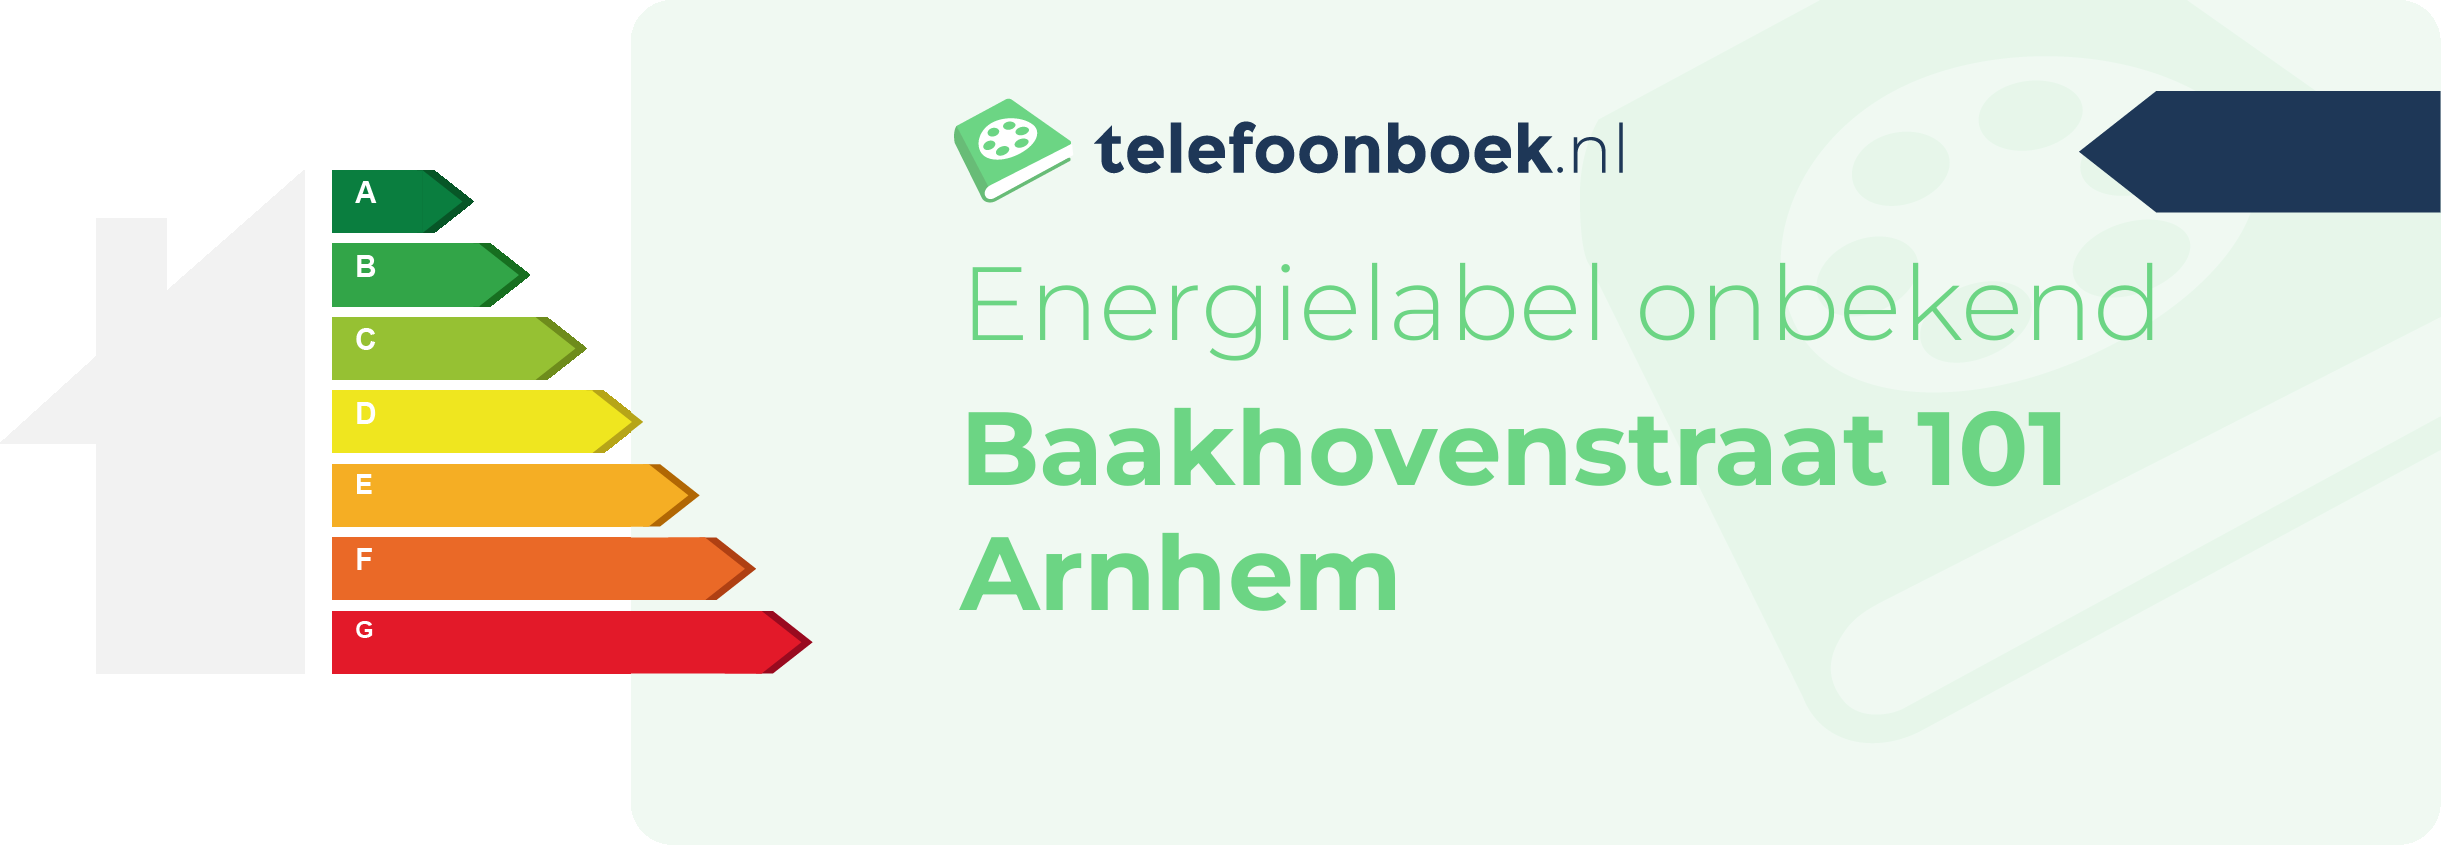 Energielabel Baakhovenstraat 101 Arnhem